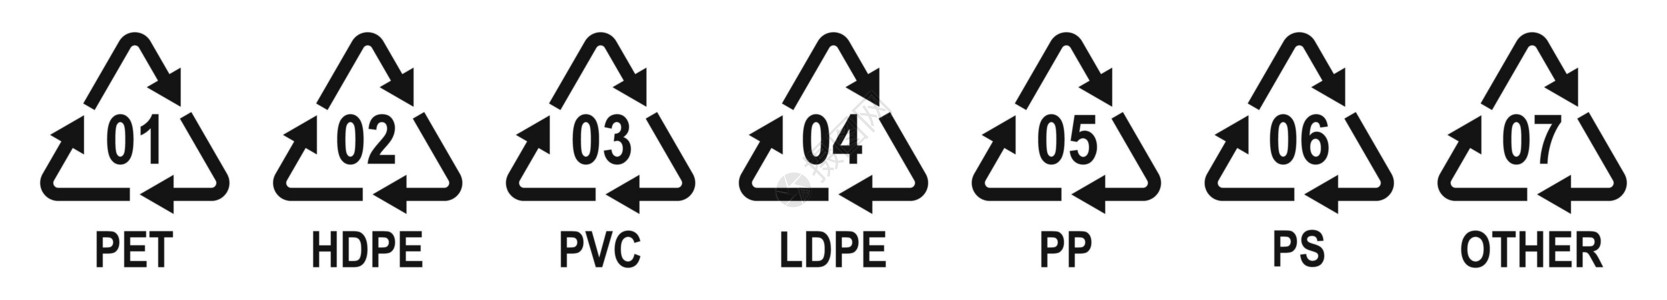 高密度聚乙烯塑料包装材料的标识码塑料再循环符号 塑料回收符号标签行星安全环境材料生态附言食物宠物代码插画